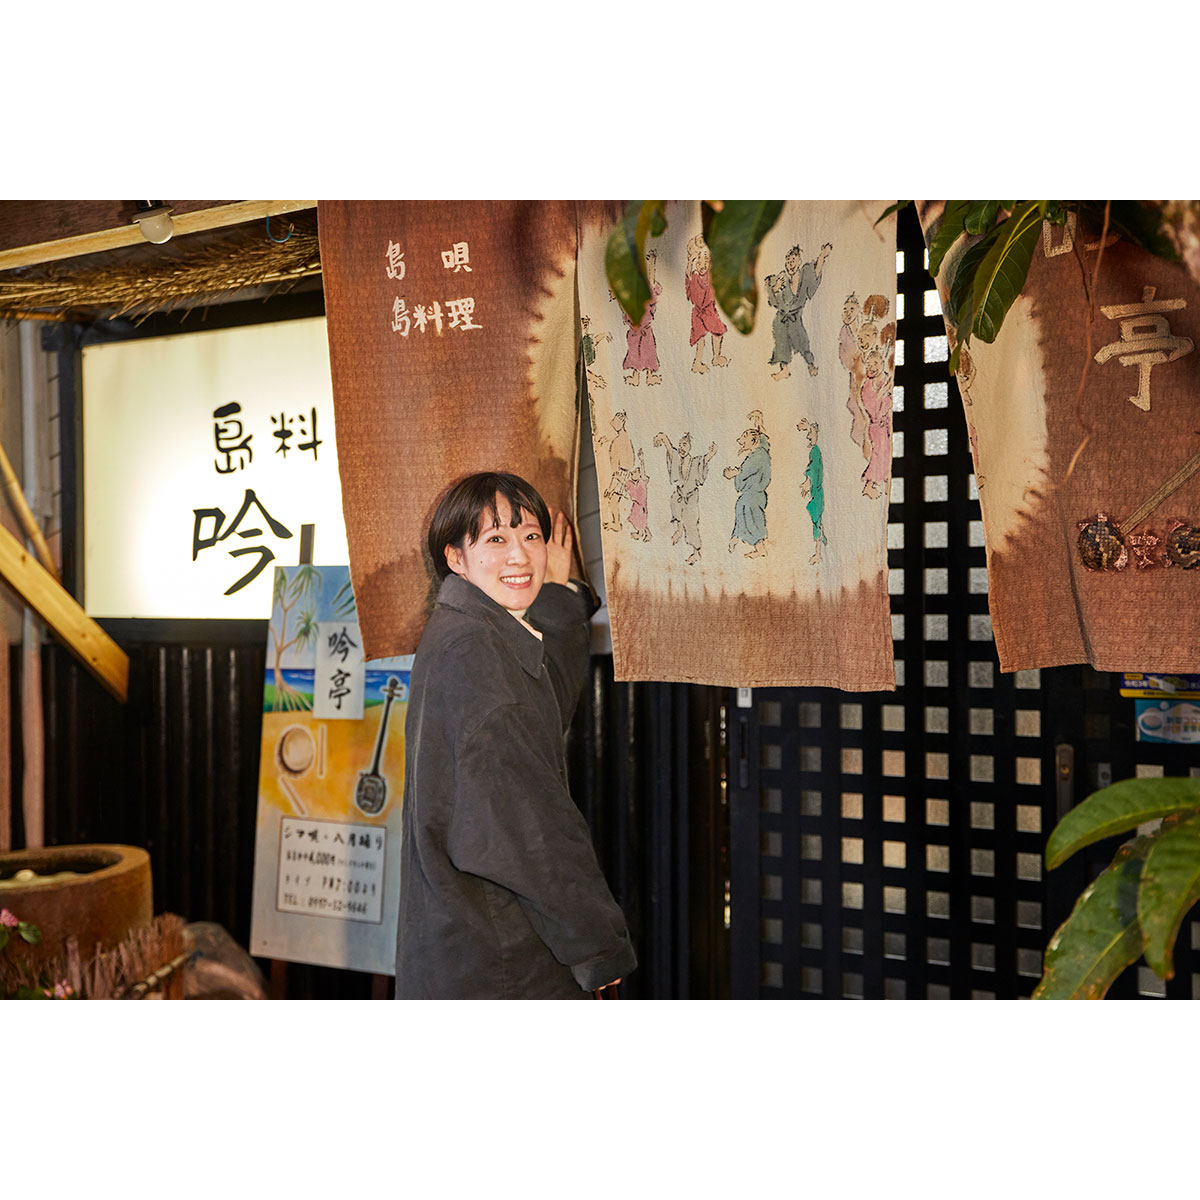 スナックや居酒屋が並ぶ名瀬の繁華街「屋仁川通り」沿い。お隣りには藤井さんが気になっていた昭和な喫茶店がある。